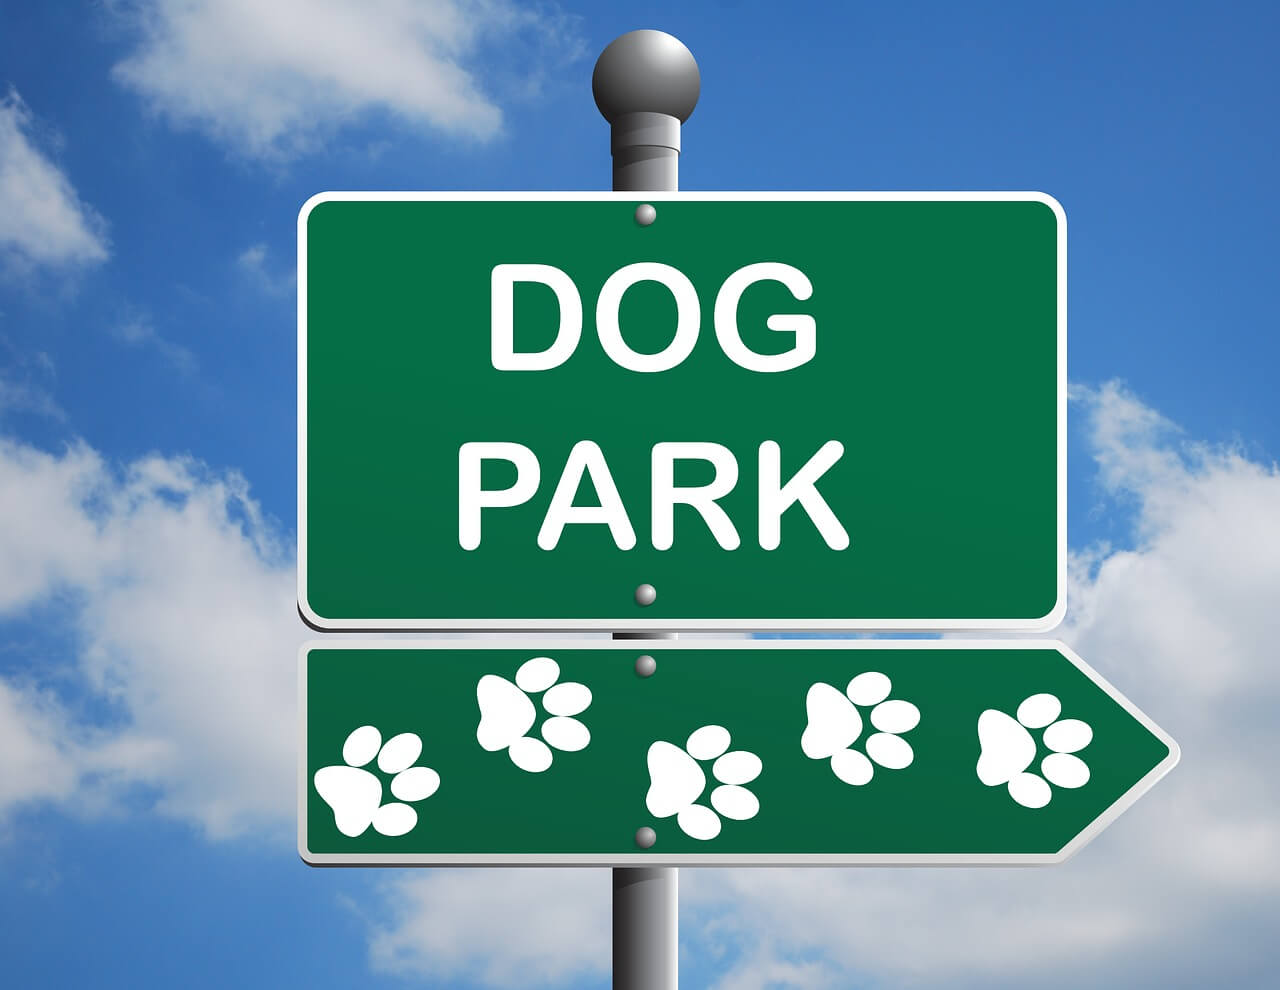 Dog park